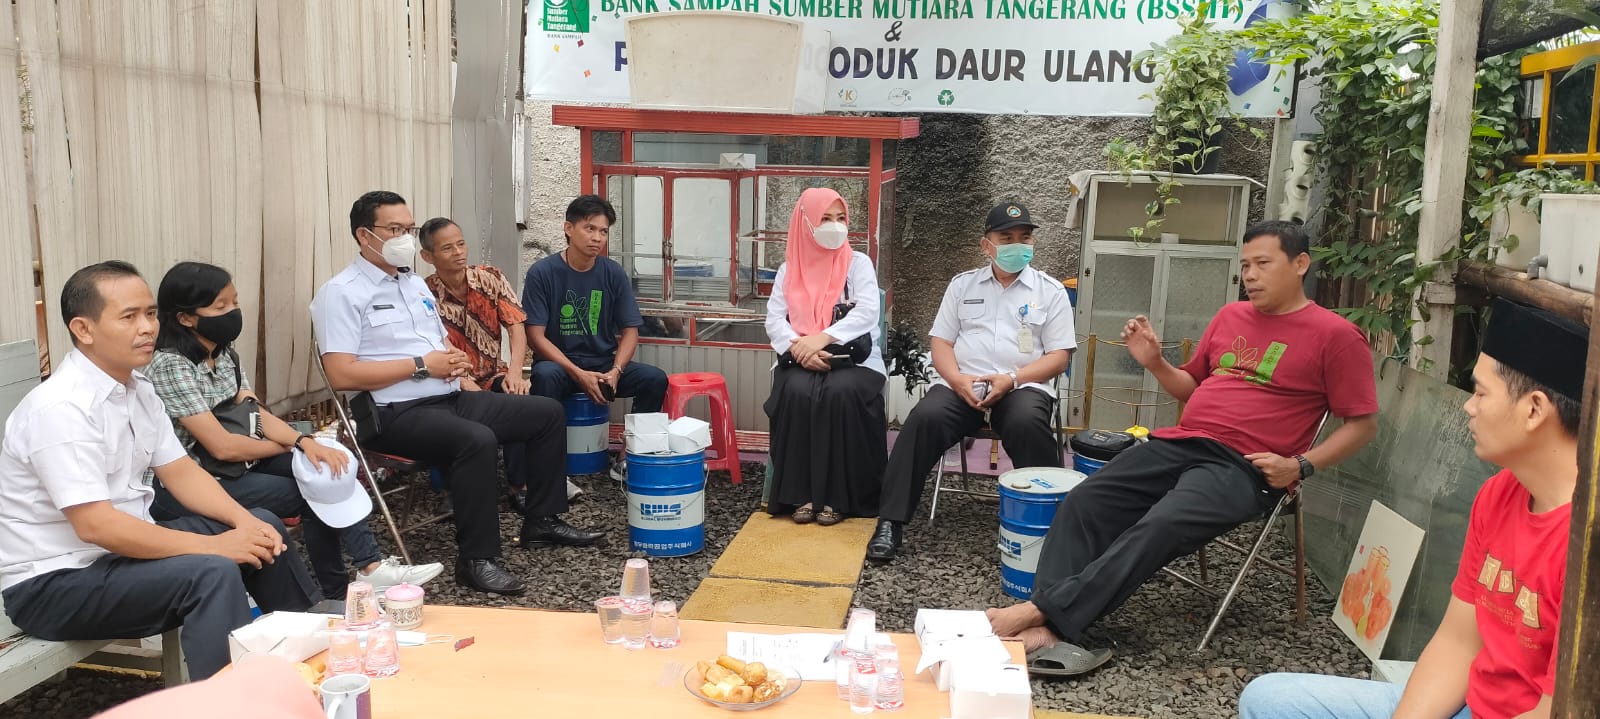 Sosialisasi Pemanfaatan Limbah Dapur (Sampah Organik) oleh DLH Kota Tangerang di Wilayah RW 08 Kelurahan Sudimara Barat